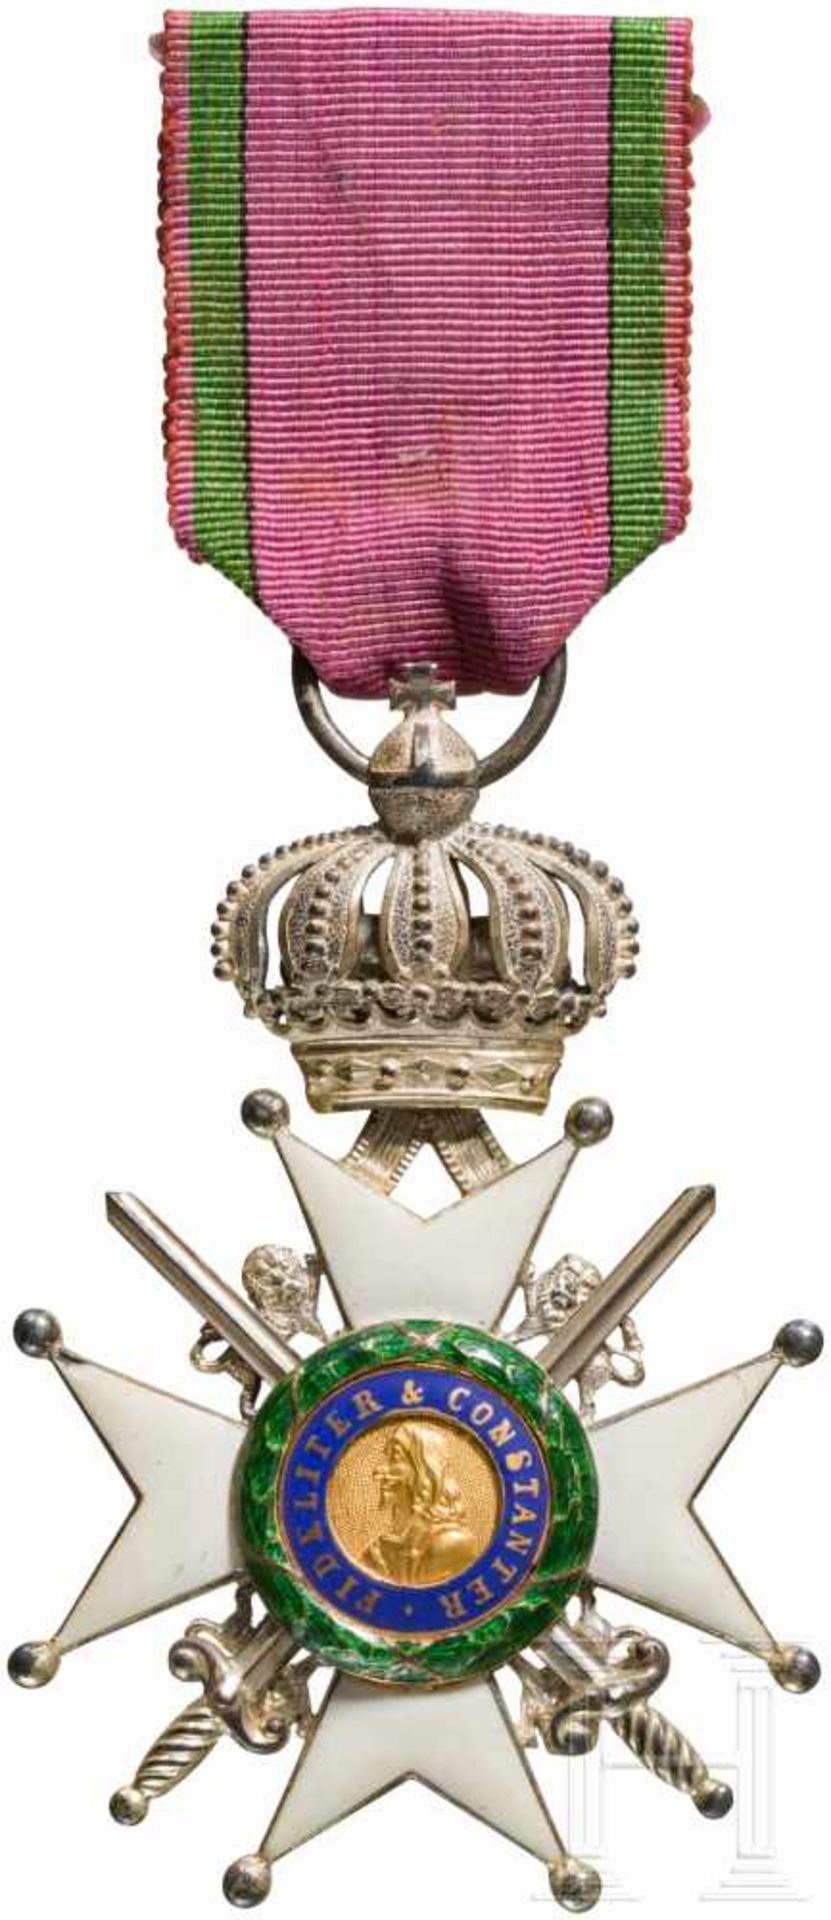 Herzoglich Sachsen-Ernestinischer Hausorden - Ritterkreuz 2. Klasse mit SchwerternSilber und